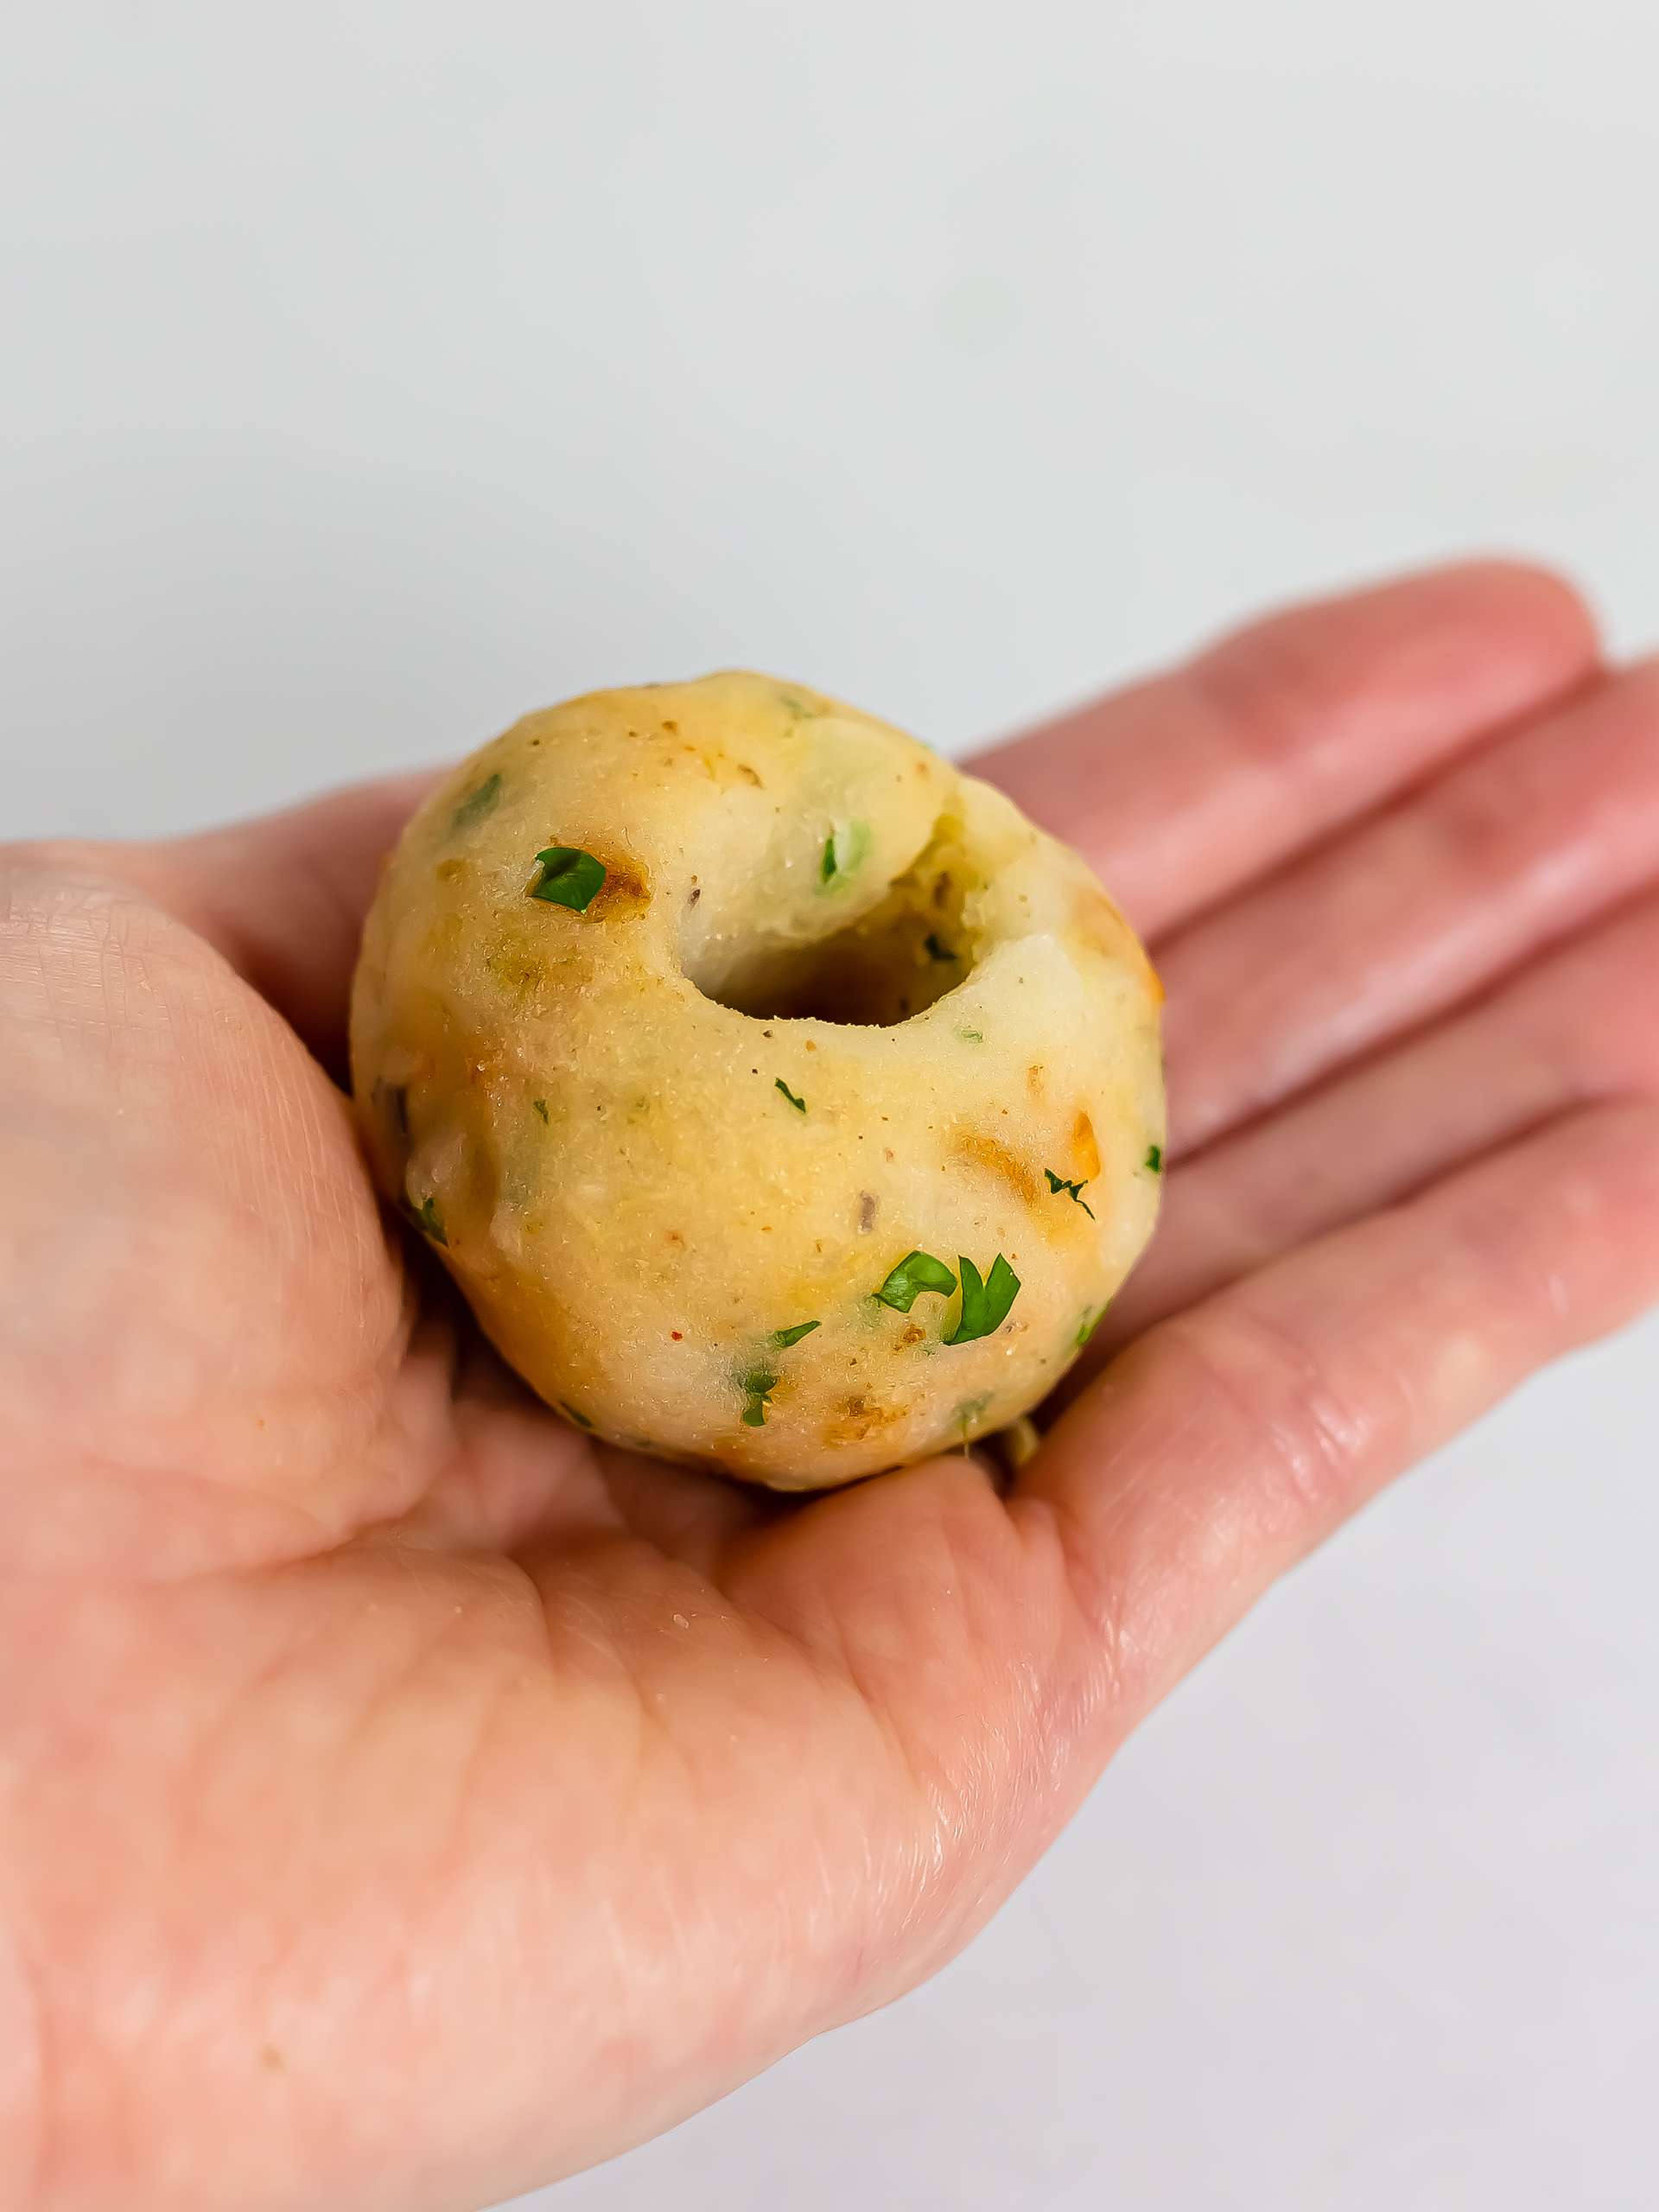 hand showing a potato croquette